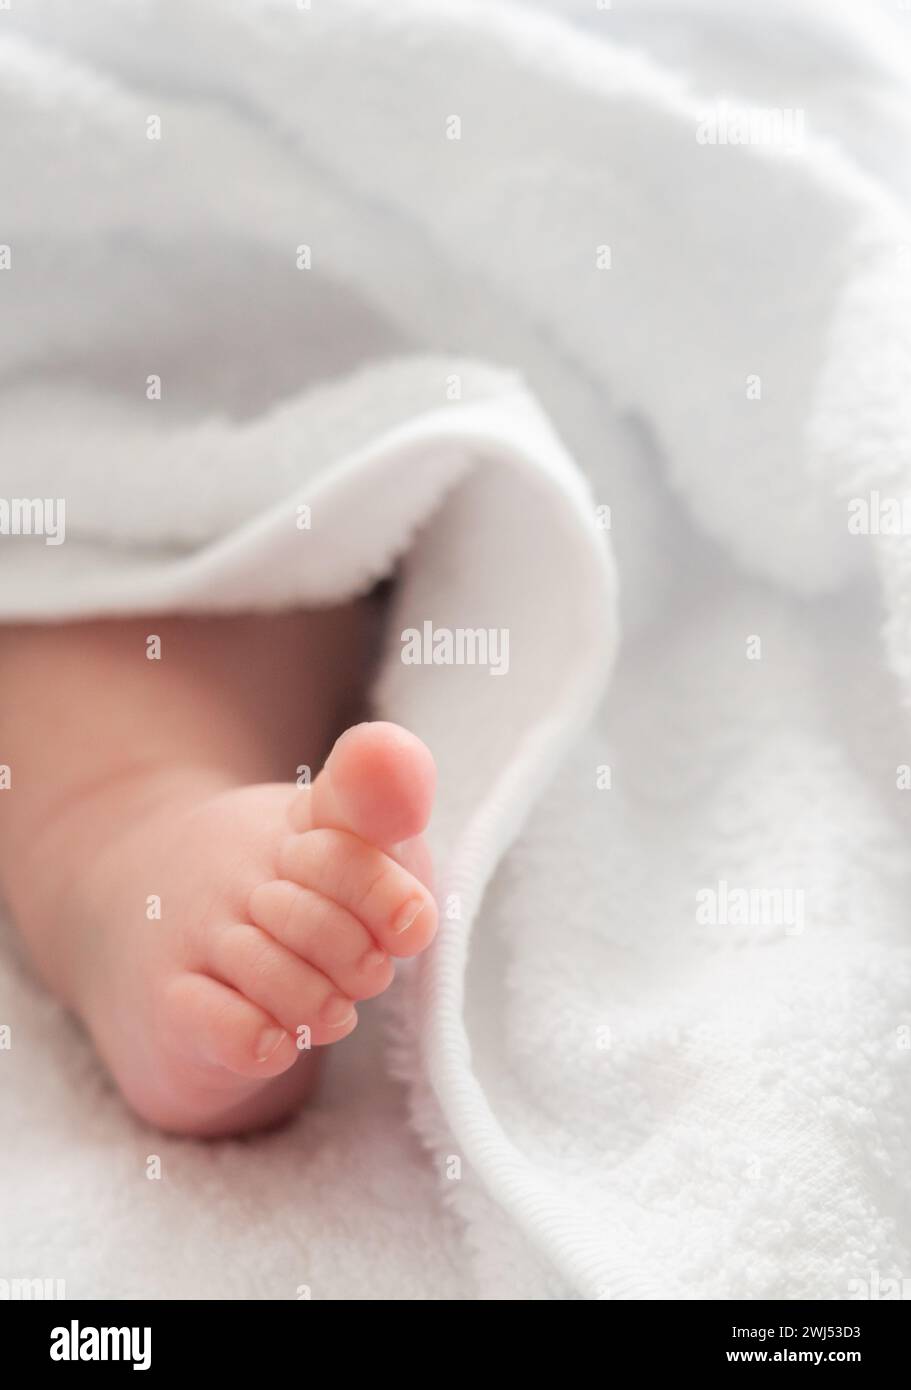 Nouveaux débuts : le pied du nourrisson délicatement enveloppé de blanc Banque D'Images